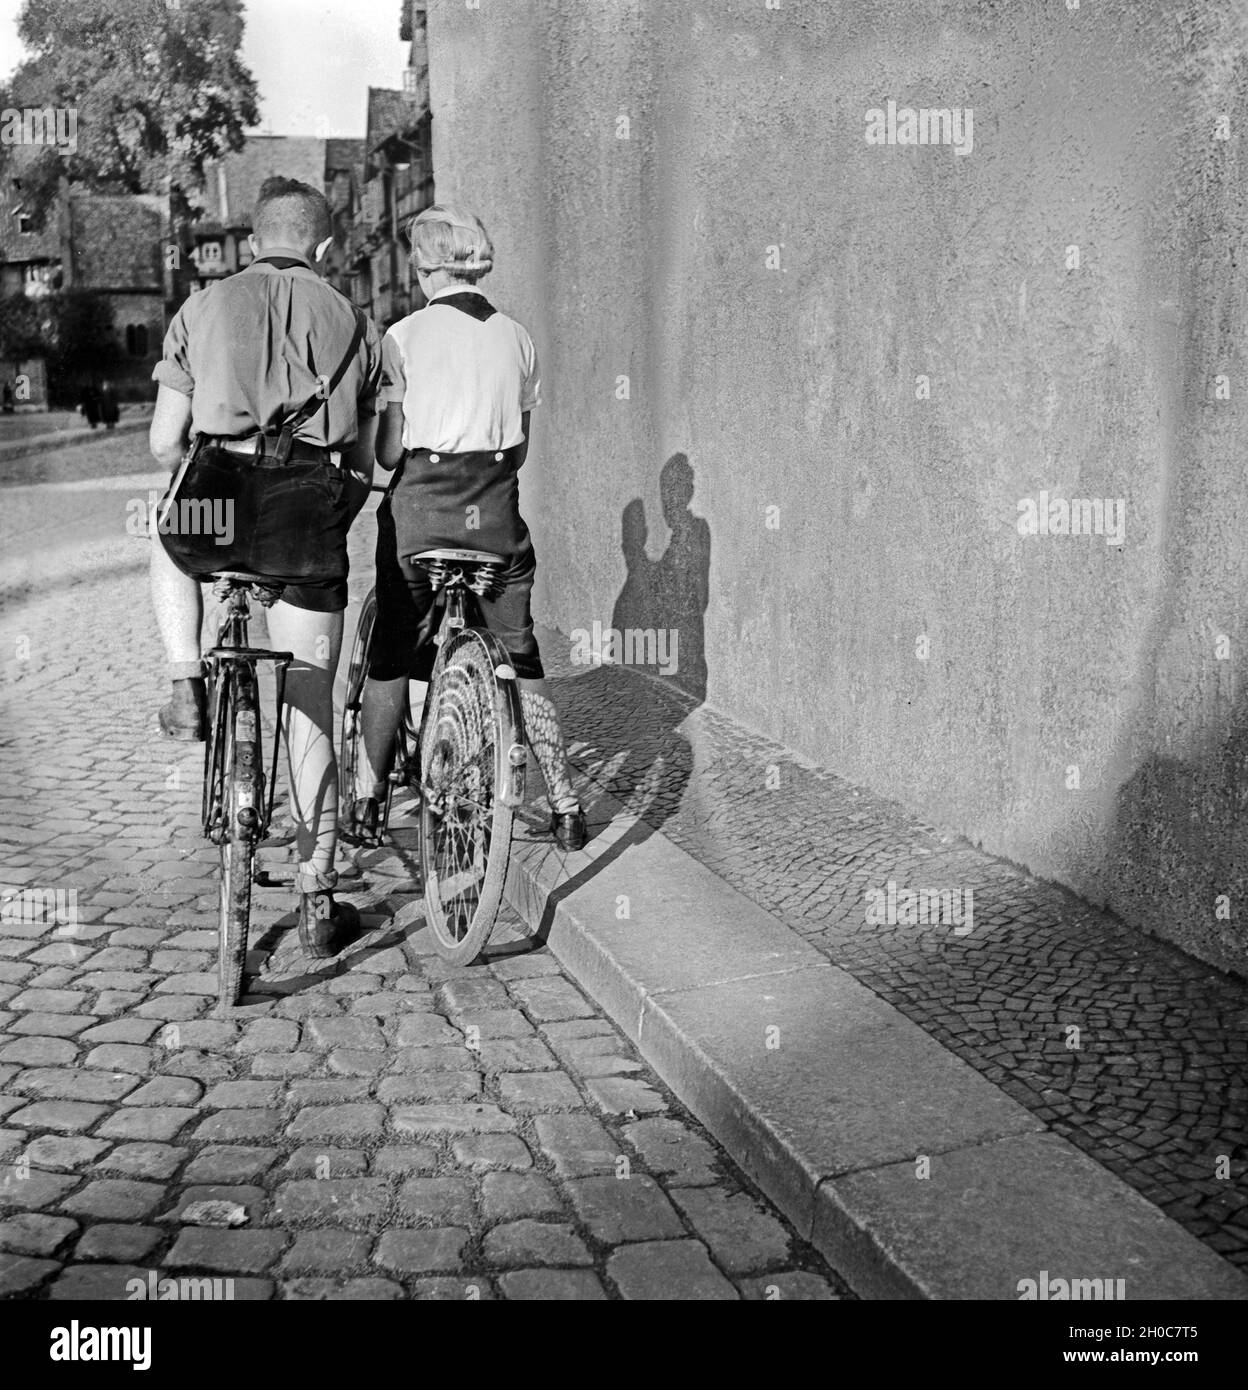 Ein Hitlerjunge und ein BDM Mädel auf ihren Fahrrädern in einer Gasse in Braunschweig, Deutschland 1930er Jahre. A Hitler youth and a BDM girl on their bicycles in a lane of Braunschweig, Germany 1930s. Stock Photo